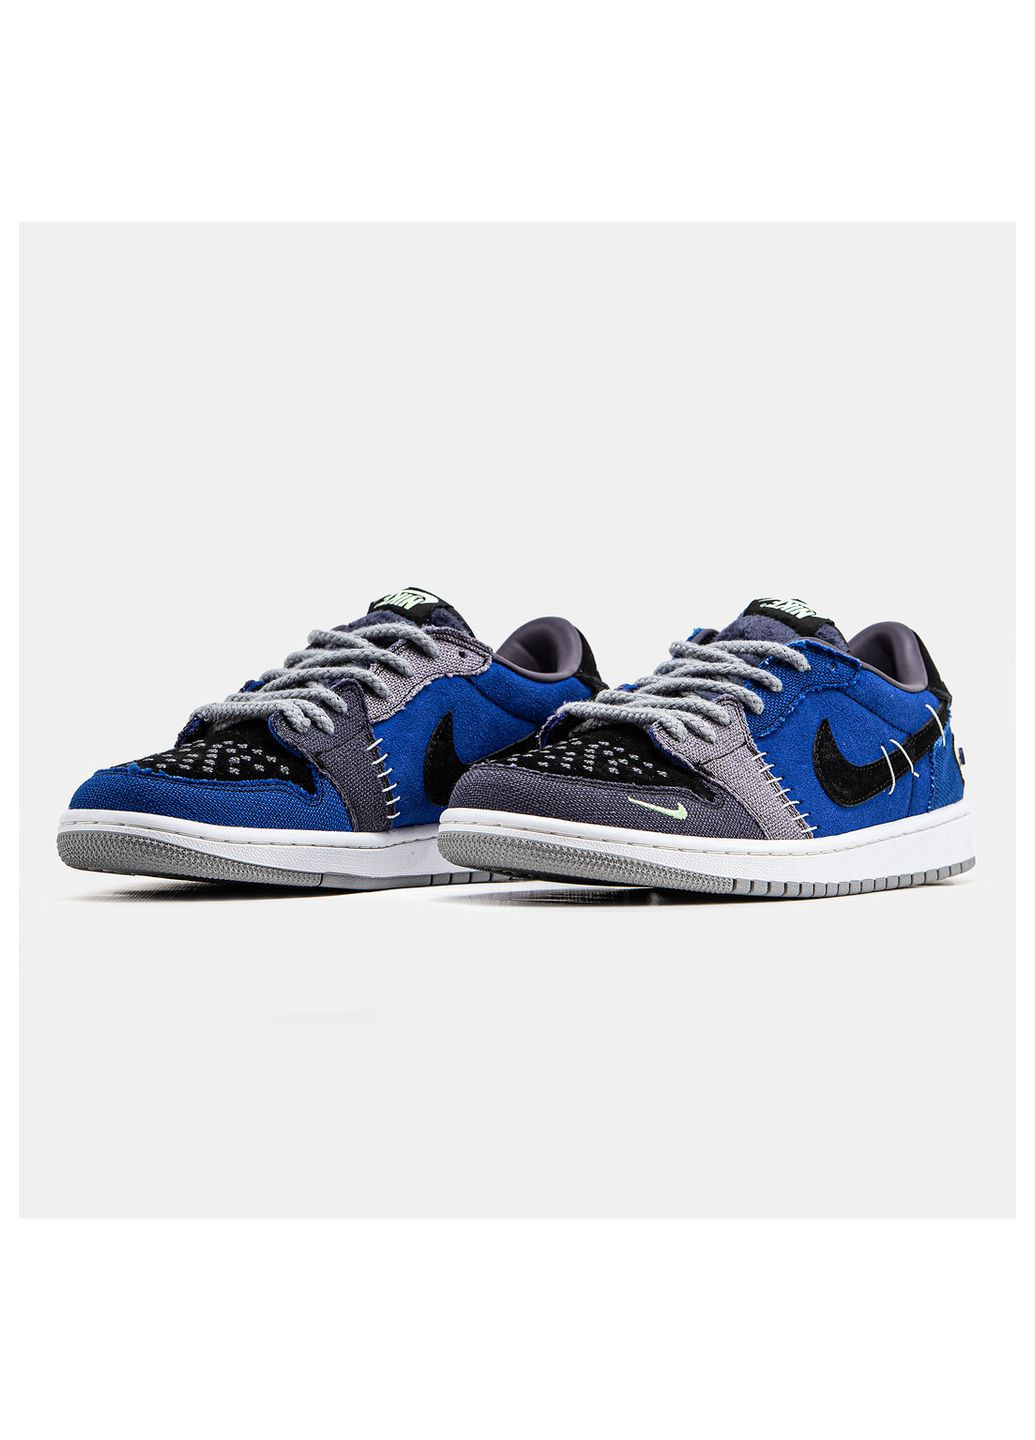 Цветные демисезонные кроссовки мужские Nike Air Jordan 1 Low Voodoo Alternate Zion